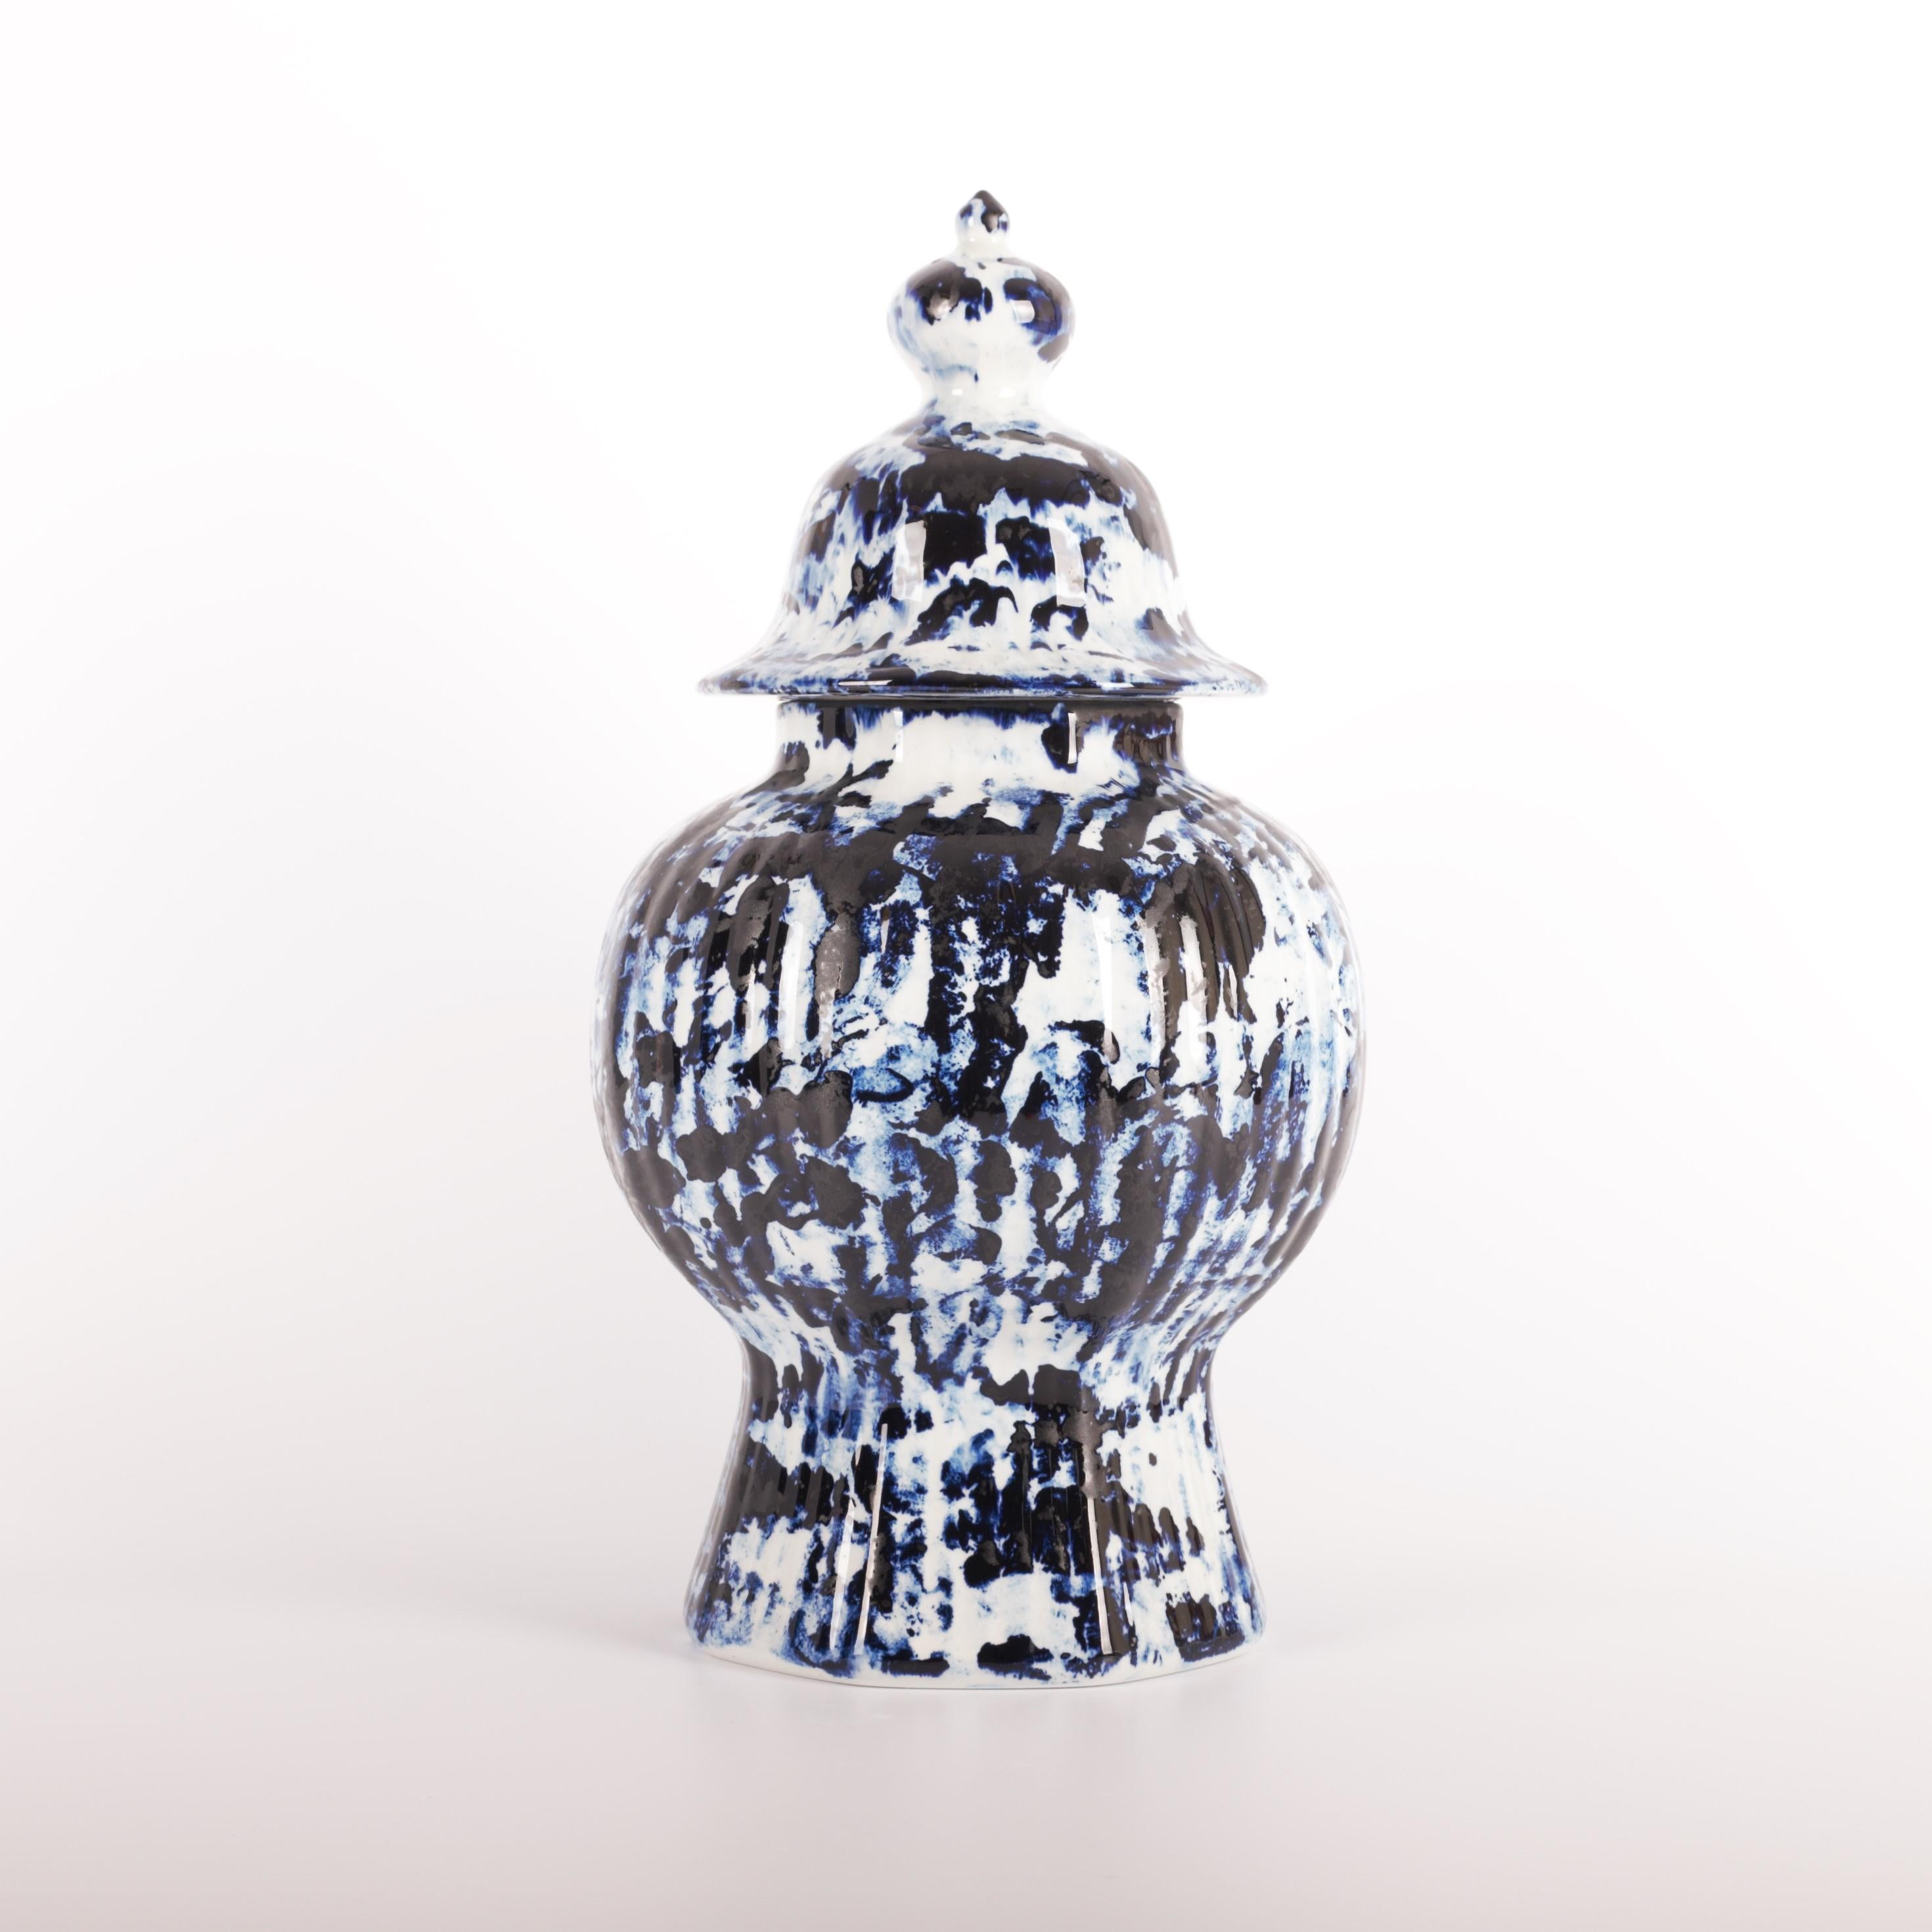 Le vase One Minute Delft Blue avec couvercle de 37 cm est disponible en tant qu'édition personnelle exclusive, le label de Marcel Wanders proposant des œuvres de nature plus personnelle et expérimentale. Les pièces de la série Delft Blue sont